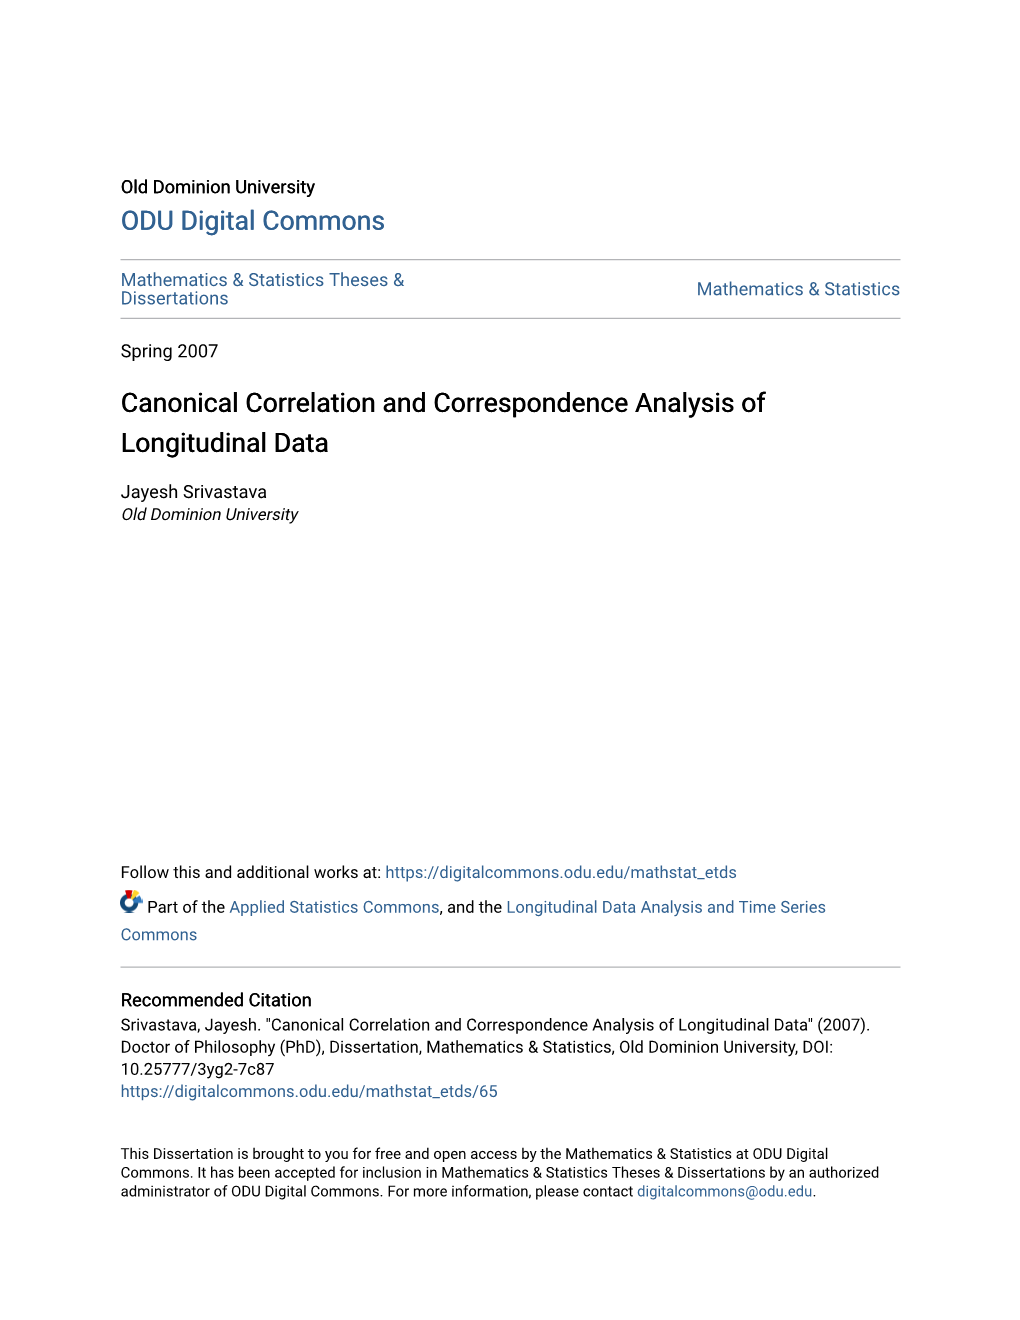 Canonical Correlation and Correspondence Analysis of Longitudinal Data